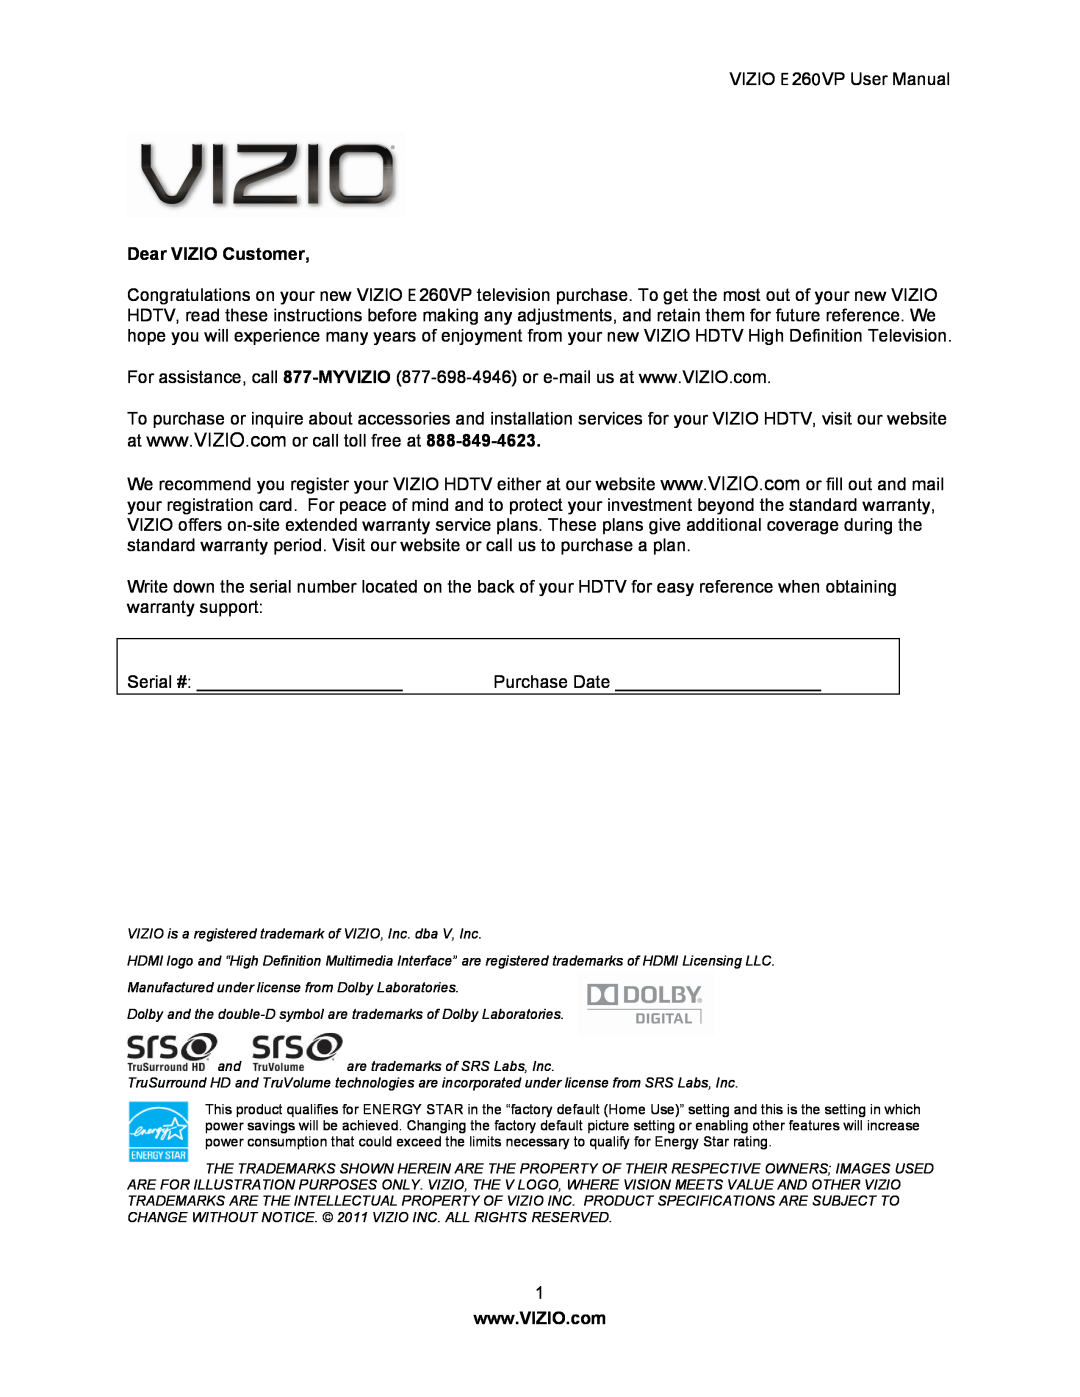 Vizio E260VP user manual Dear VIZIO Customer 